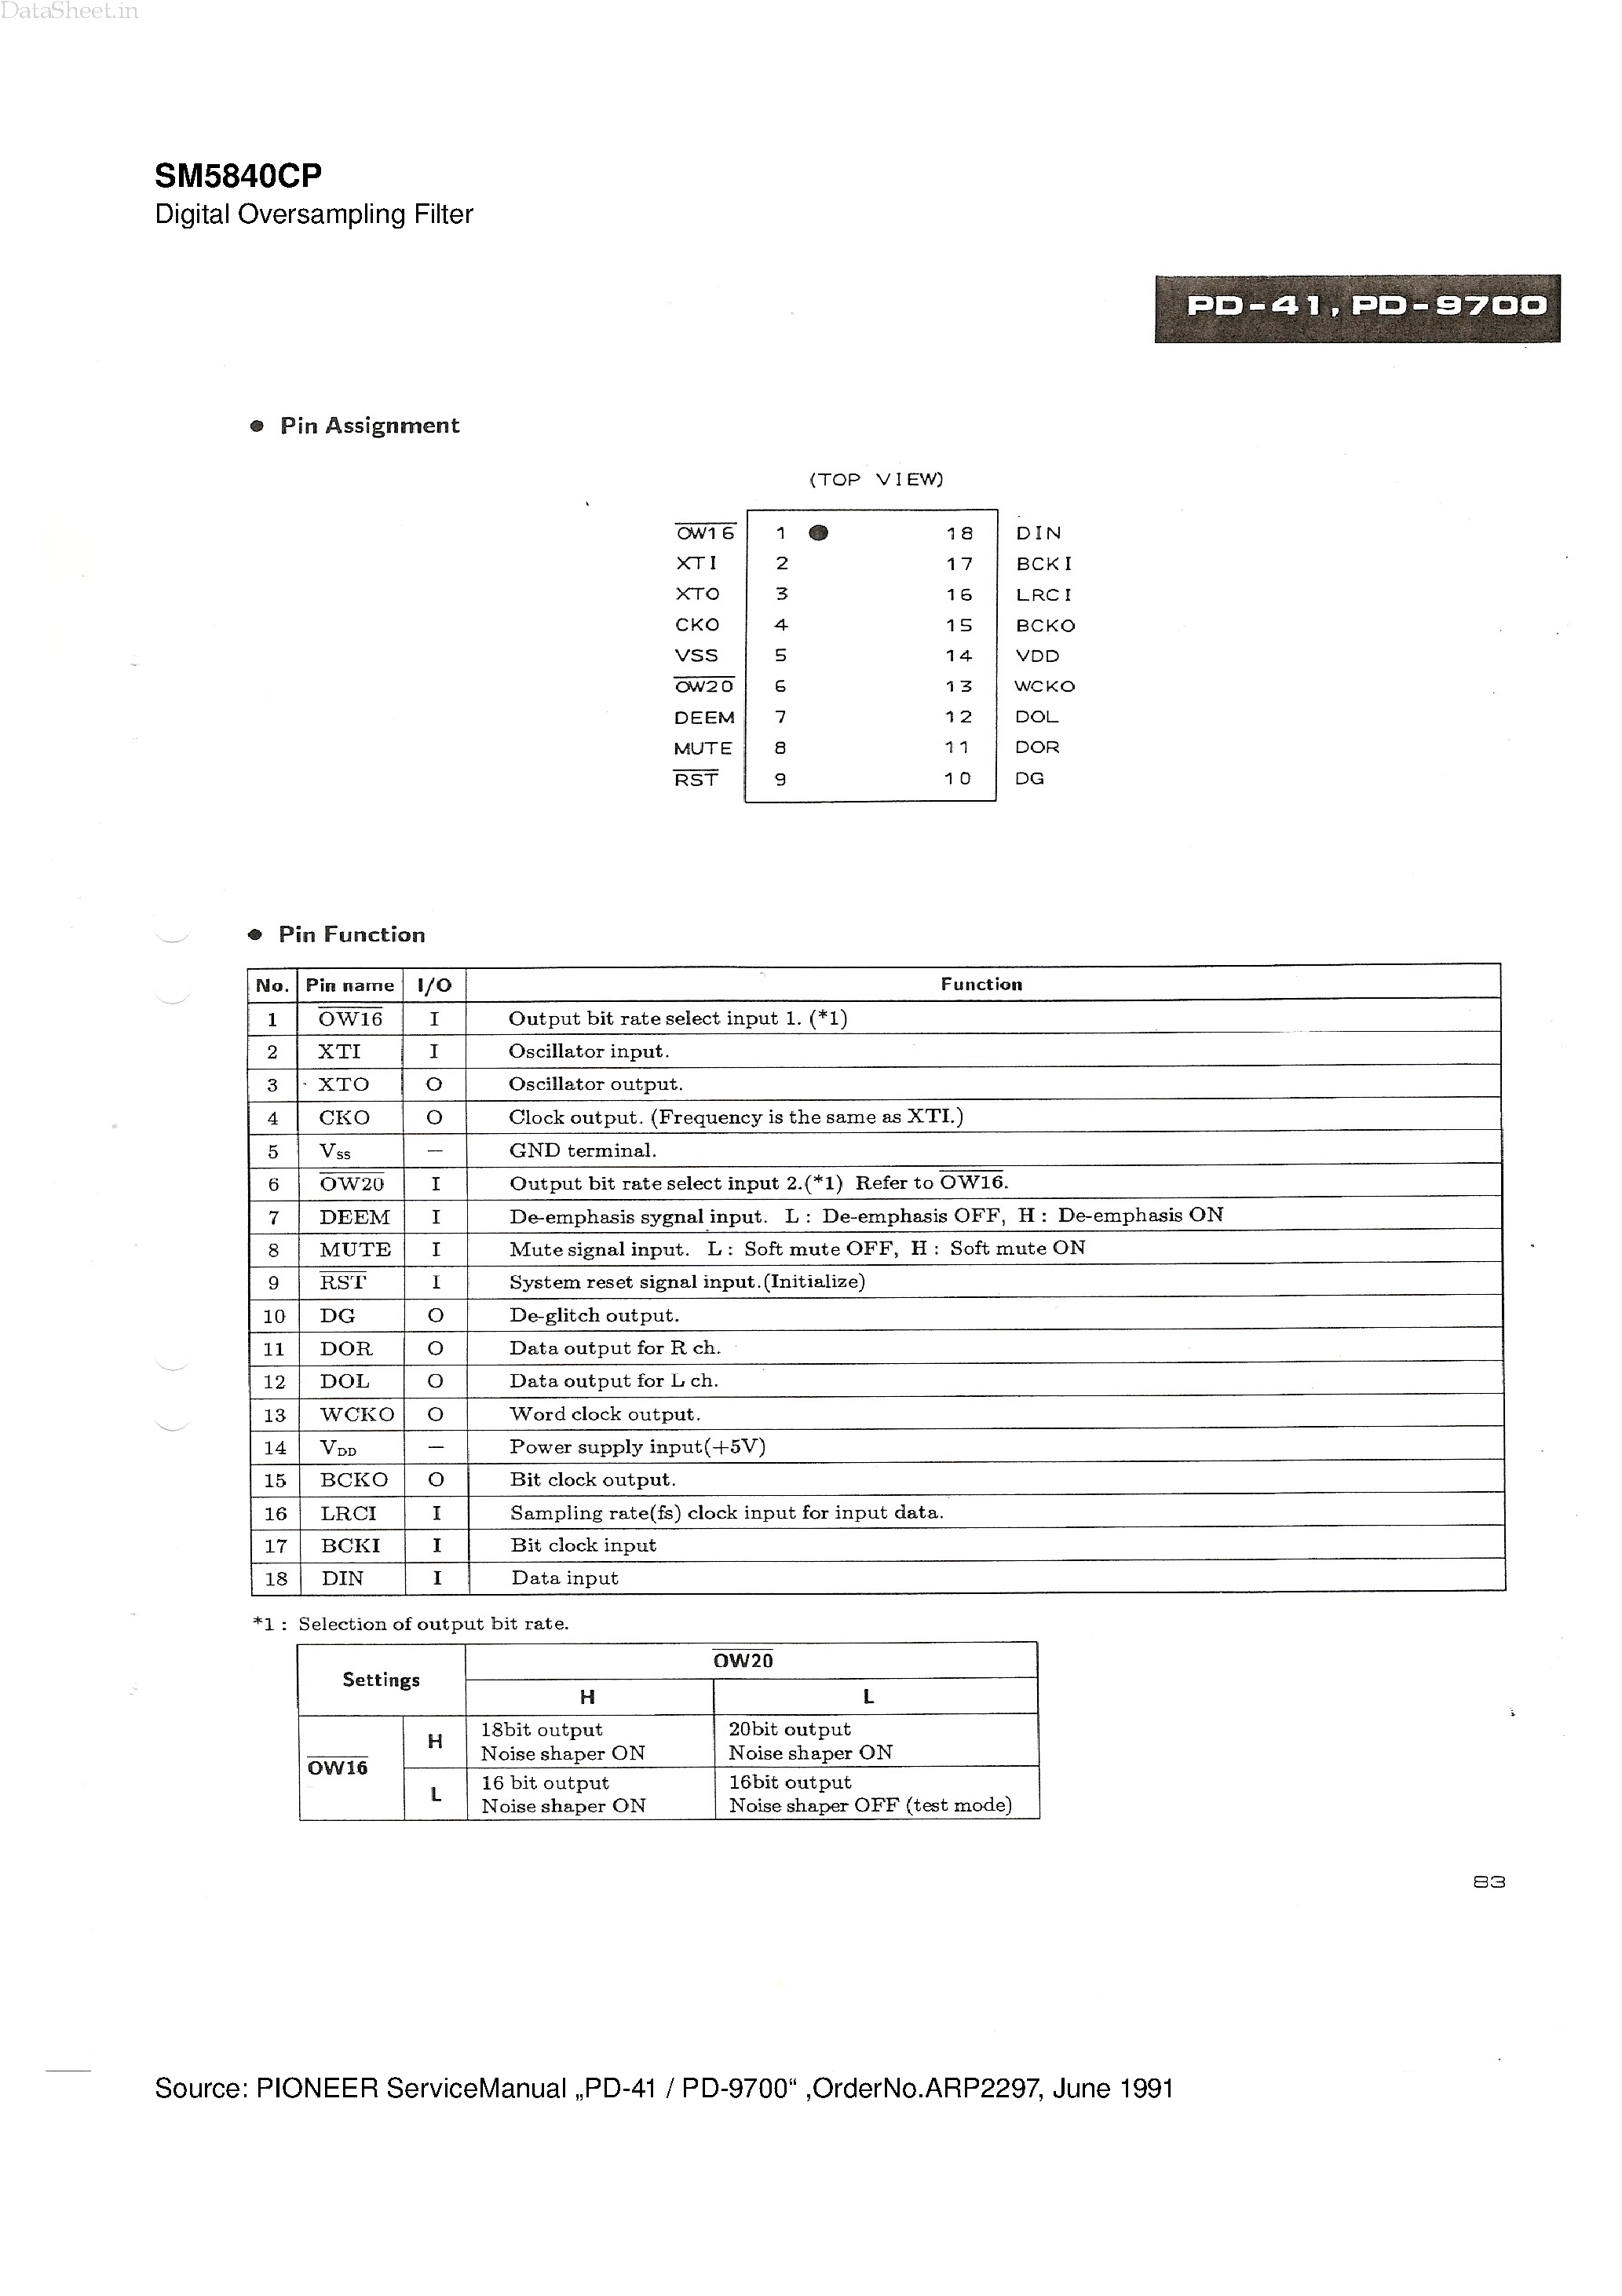 Datasheet SM5840CP - Digital Oversampling Filter page 1